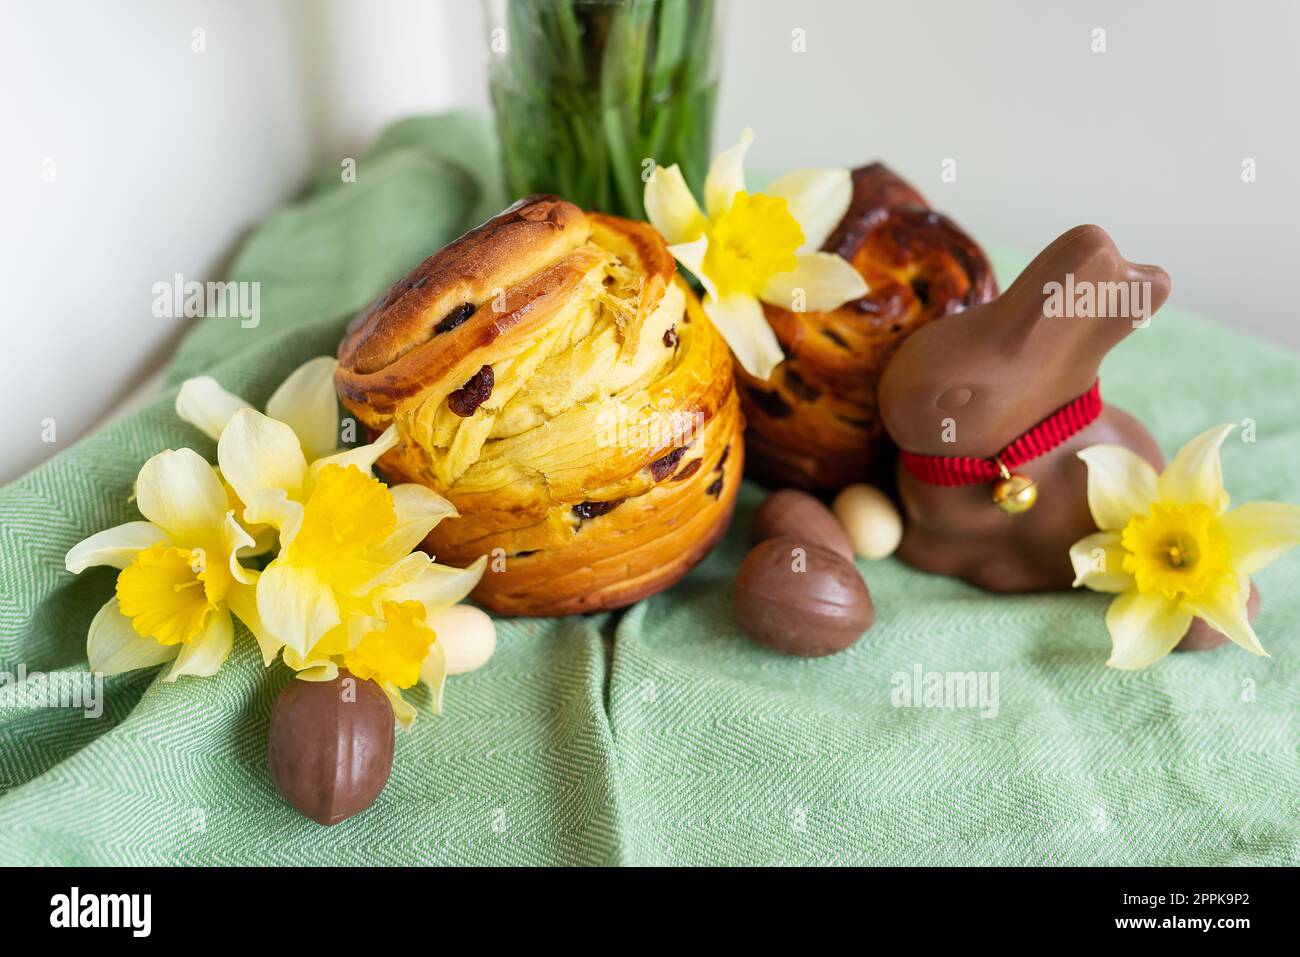 Hausgemachtes traditionelles Ostergebäck liegt auf einer grünen Serviette zusammen mit Narzissen, Kaninchen und Schokoladeneiern. Osterbacken und Dekoration. Stockfoto